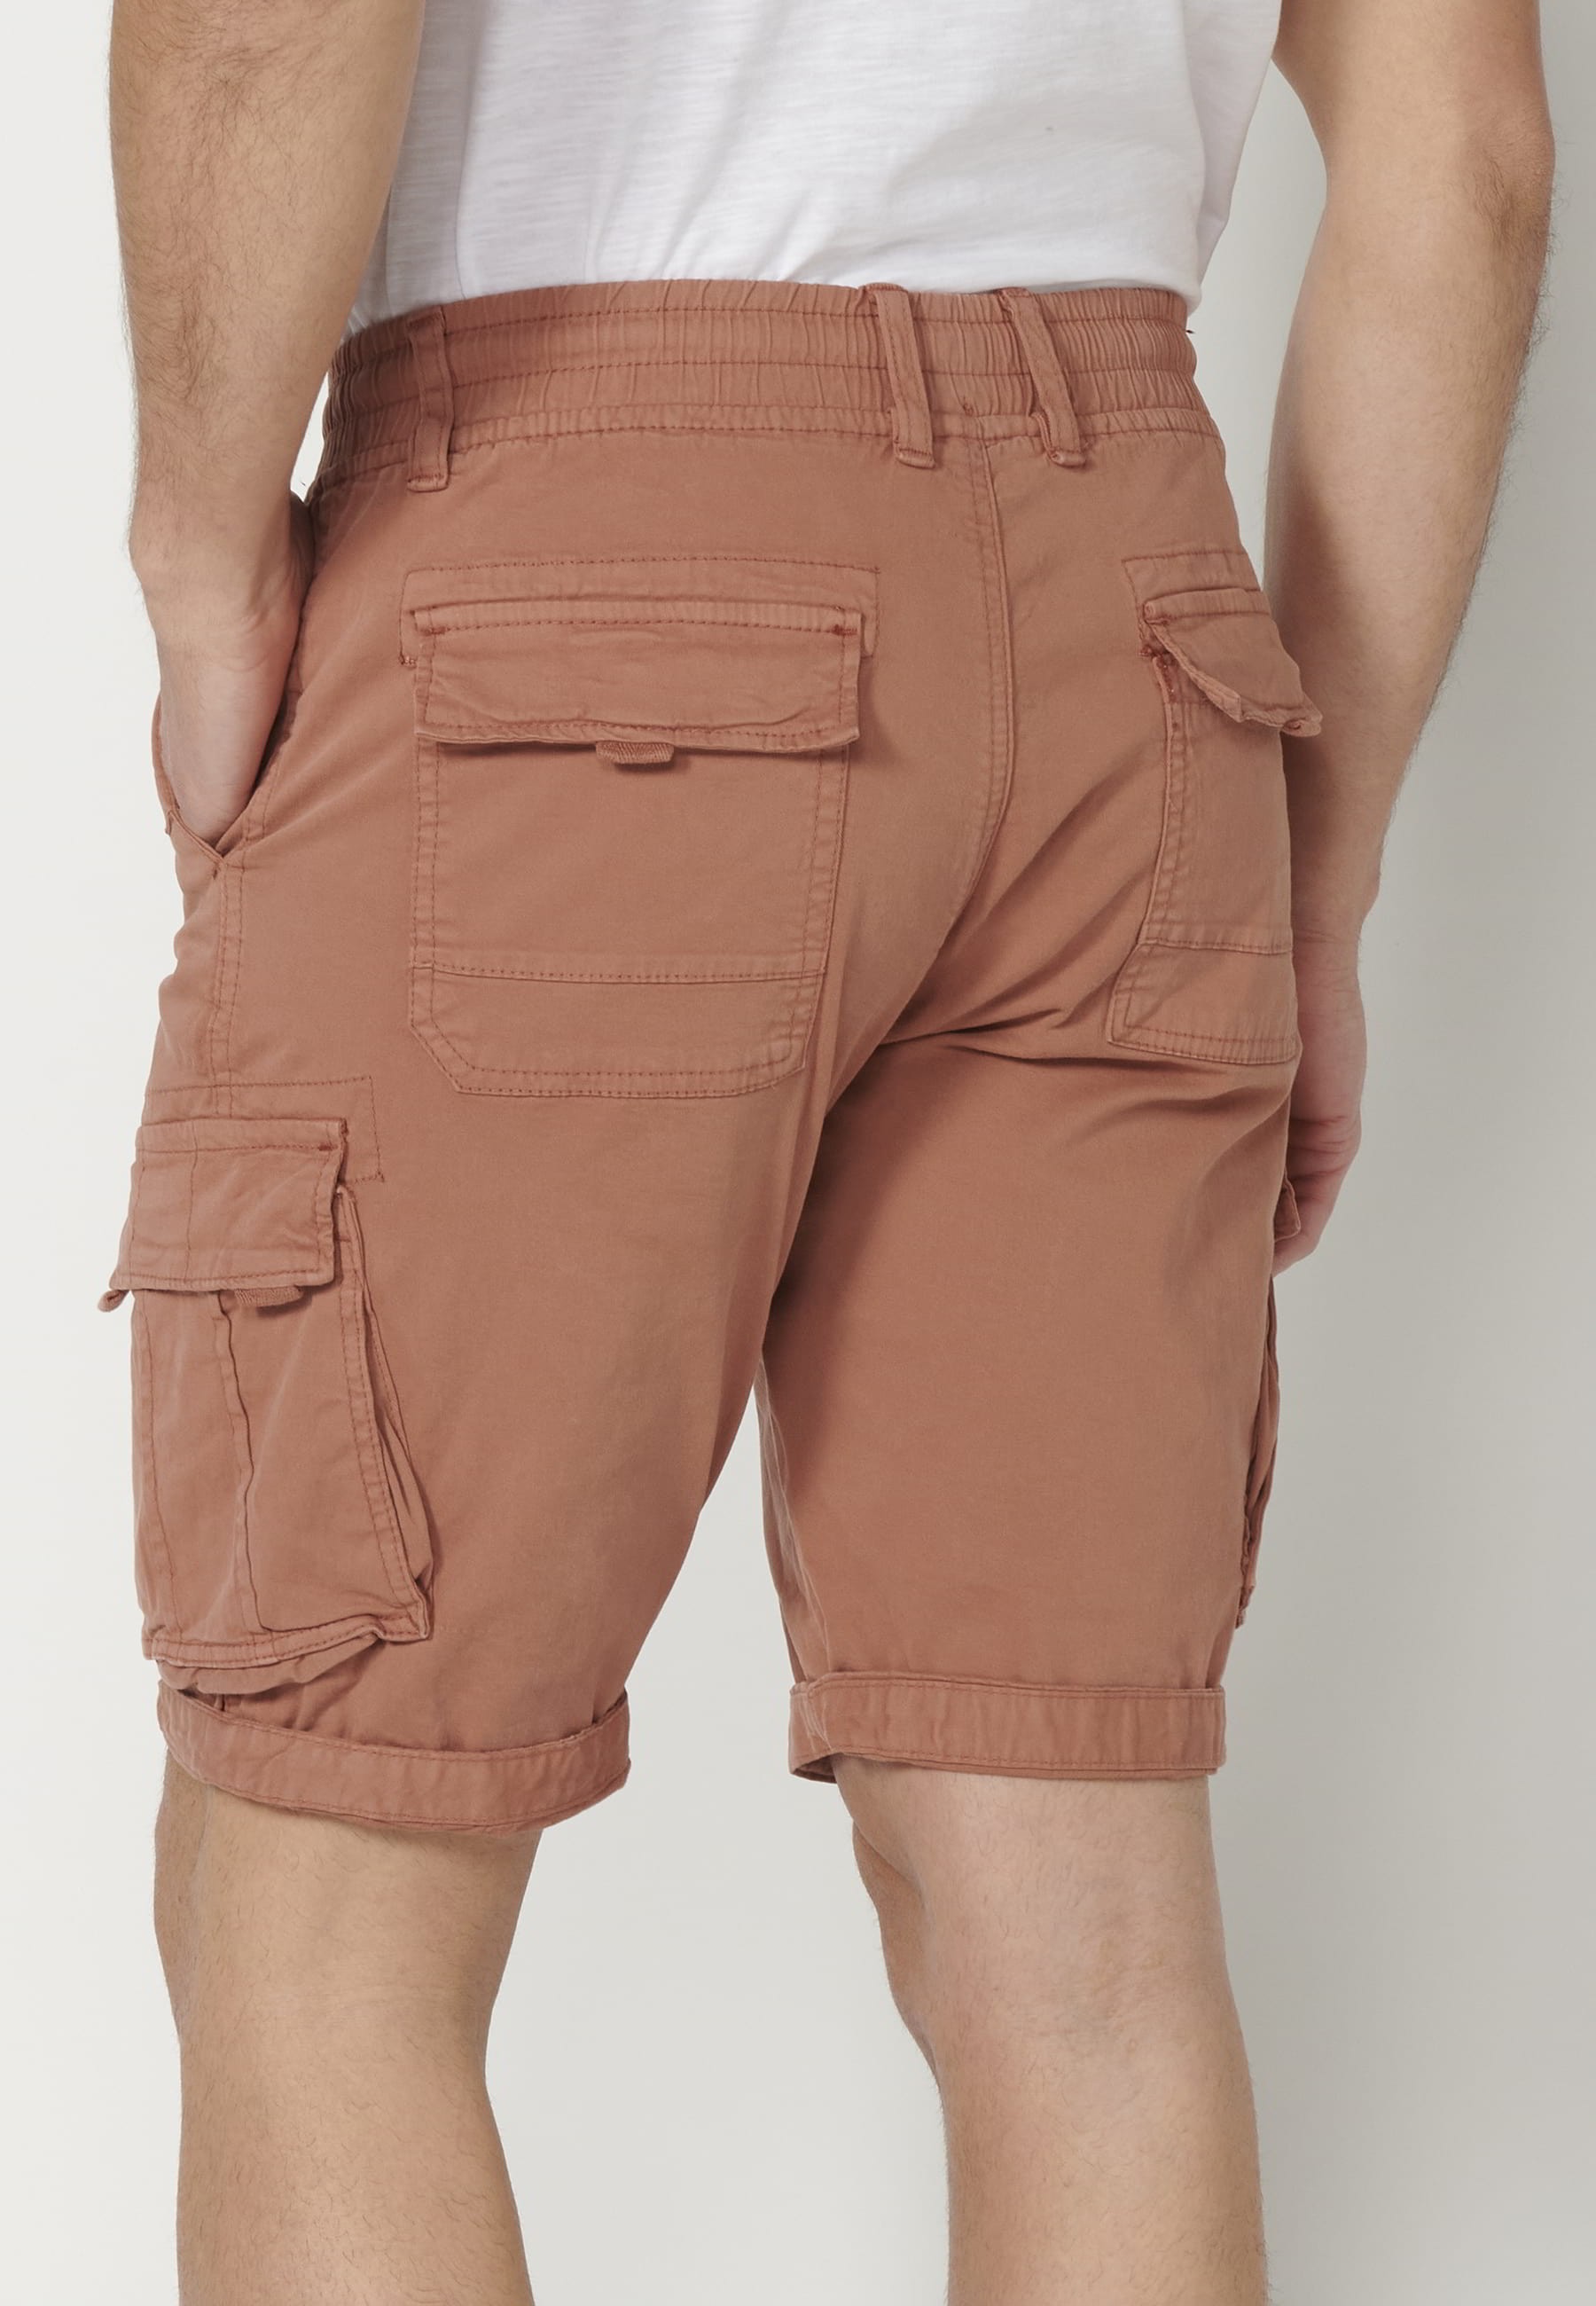 Bermuda cargo style shorts in Teja color for Men